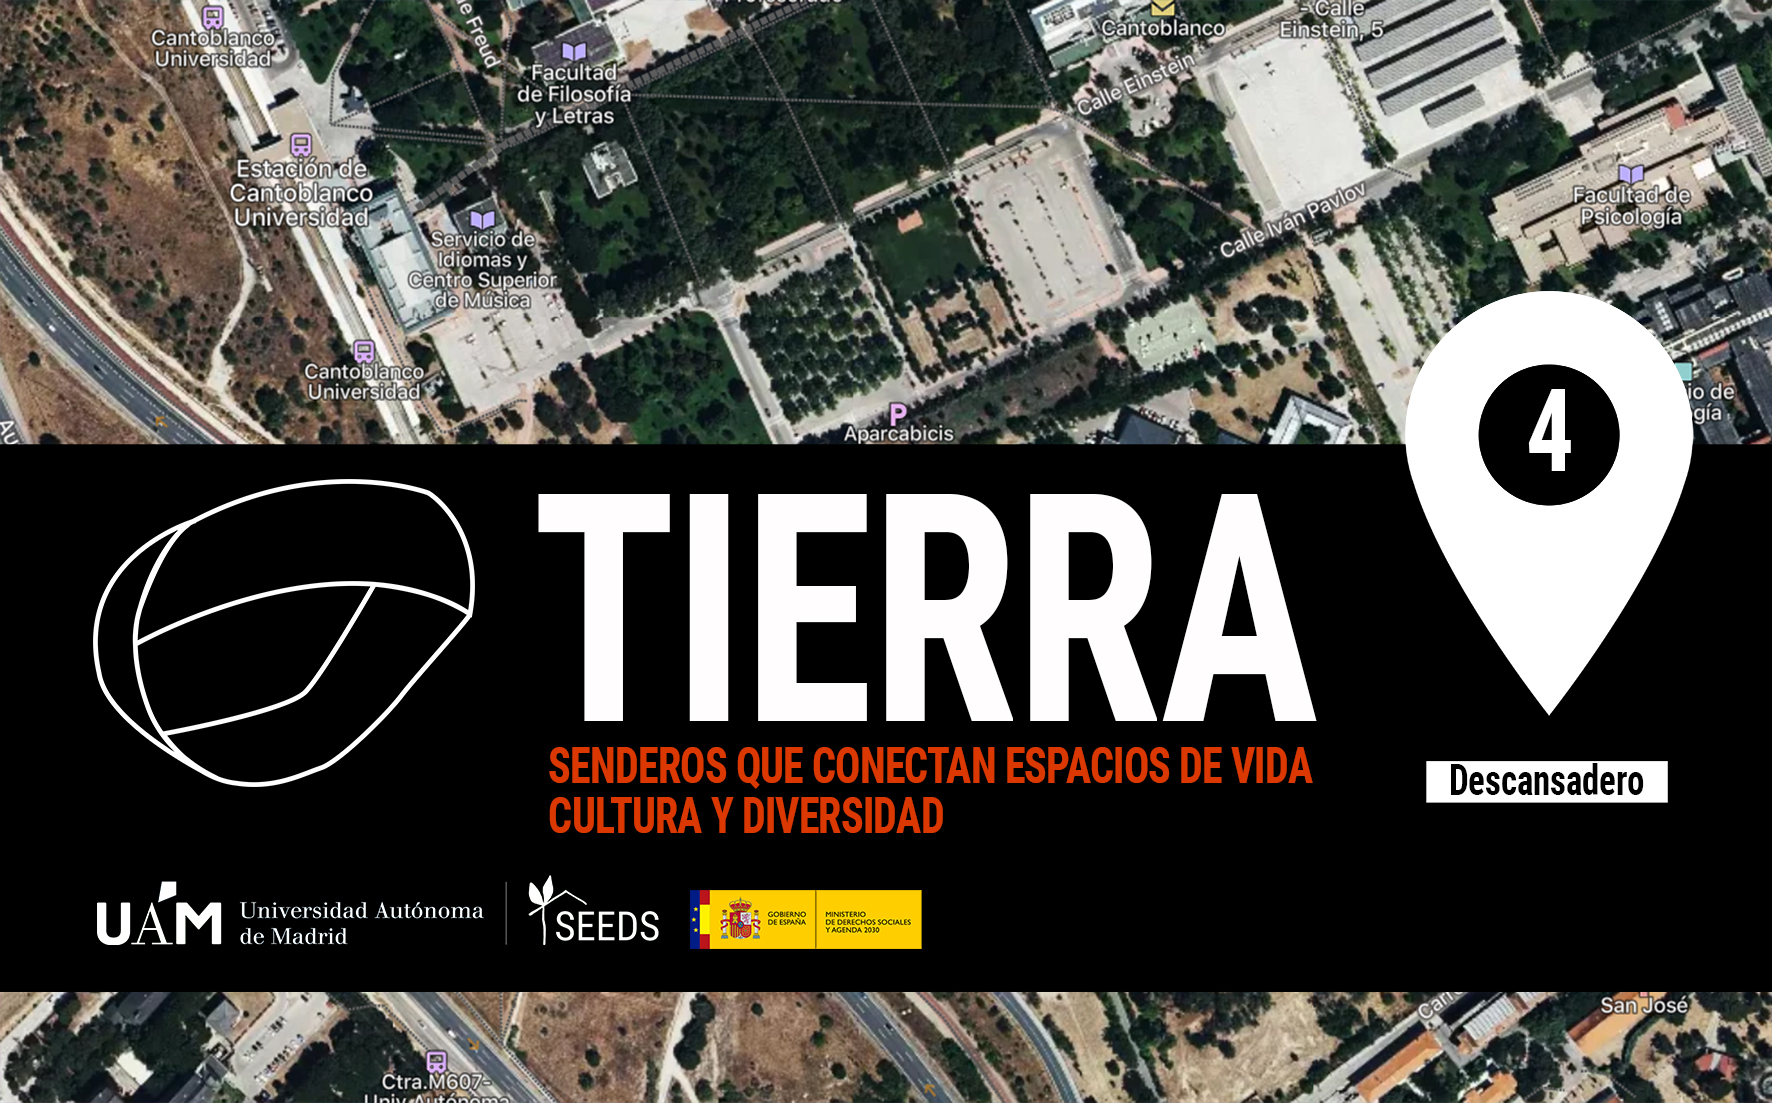 TIERRA: Descansadero 4_Senderos que conectan vida cultura y diversidad